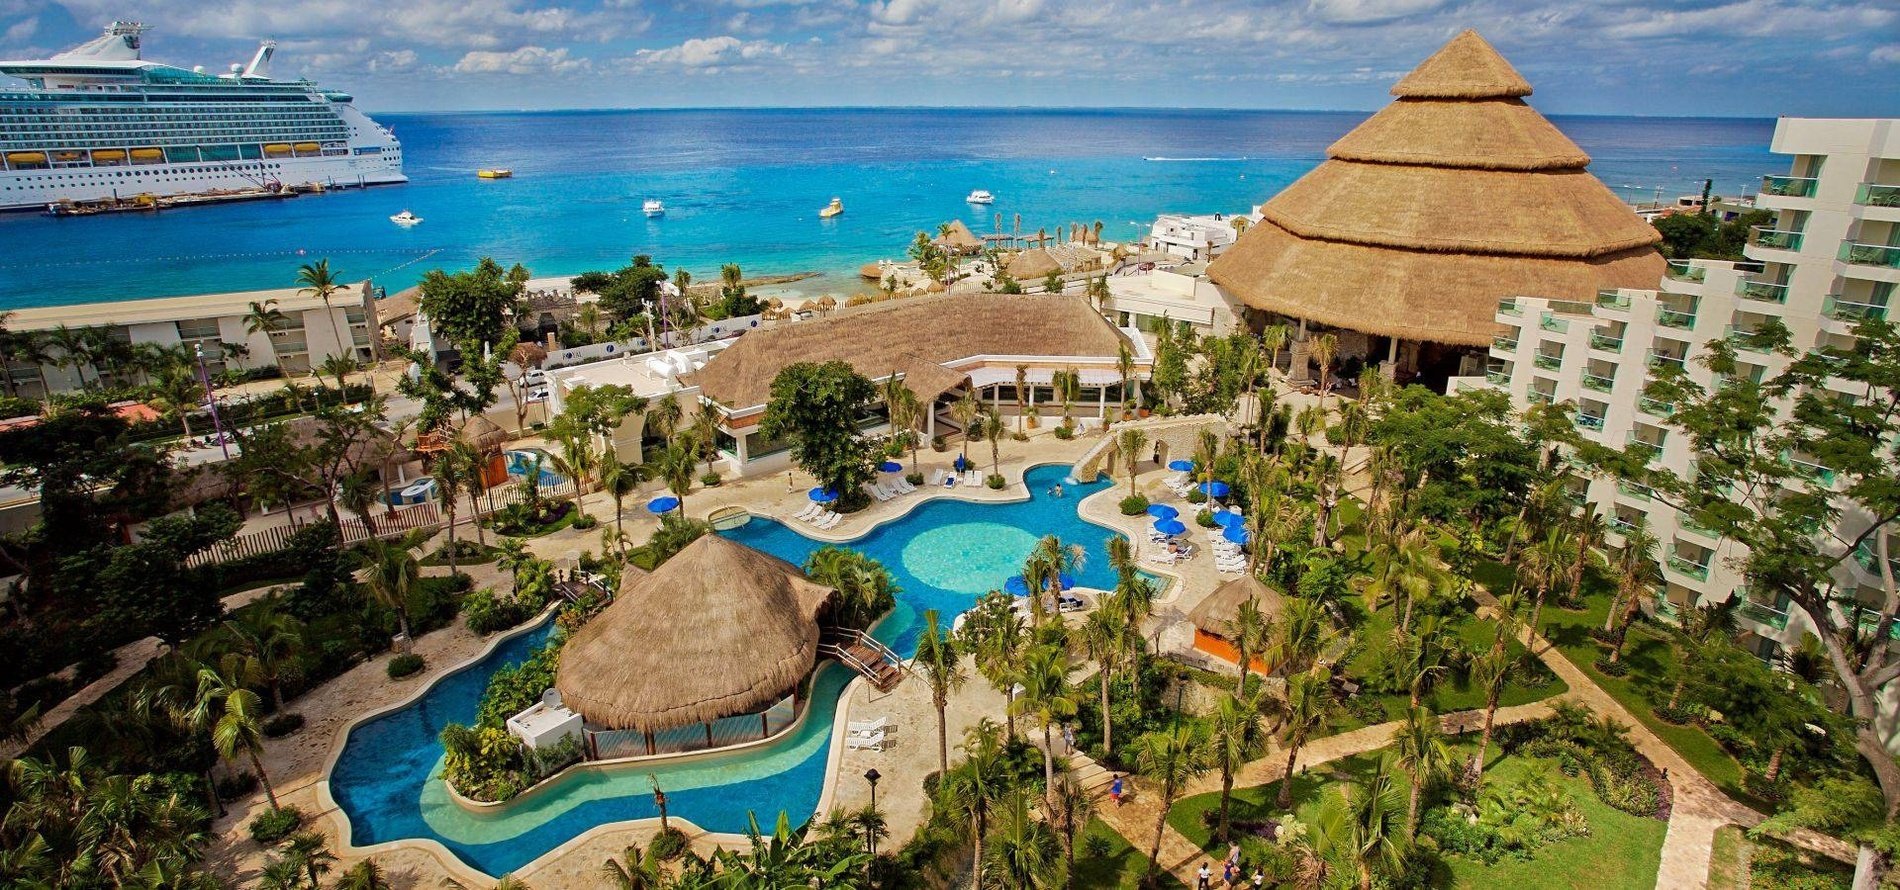 Panorámica de las instalaciones del Hotel Grand Park Royal Cozumel en el Caribe mexicano